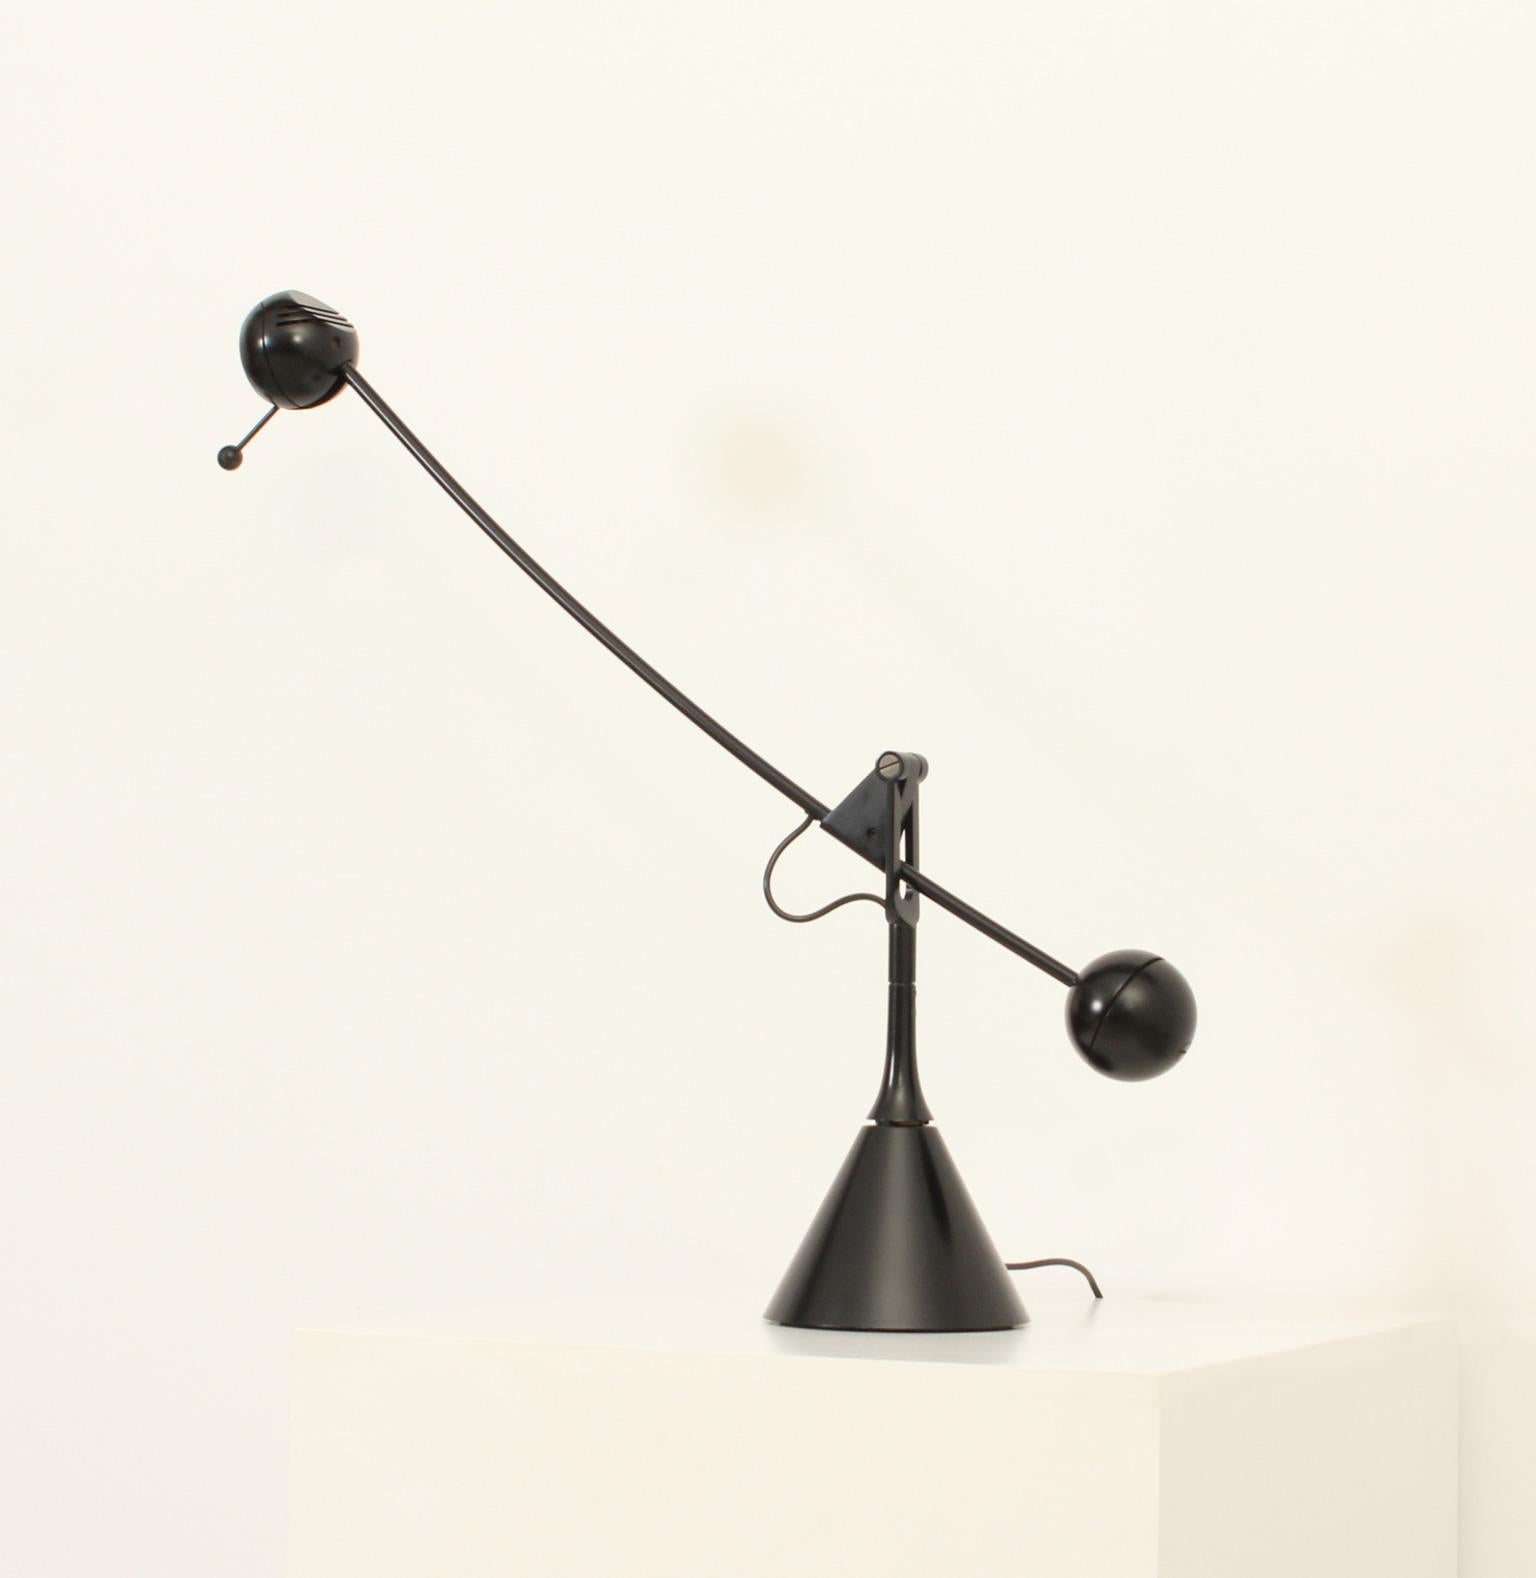 Lampe de table Calder conçue en 1975 par Enric Franch pour Metalarte, Espagne. Lampe de table sculpturale avec un contrepoids qui peut se déplacer dans n'importe quelle direction. Métal laqué noir avec régulateur d'intensité lumineuse.